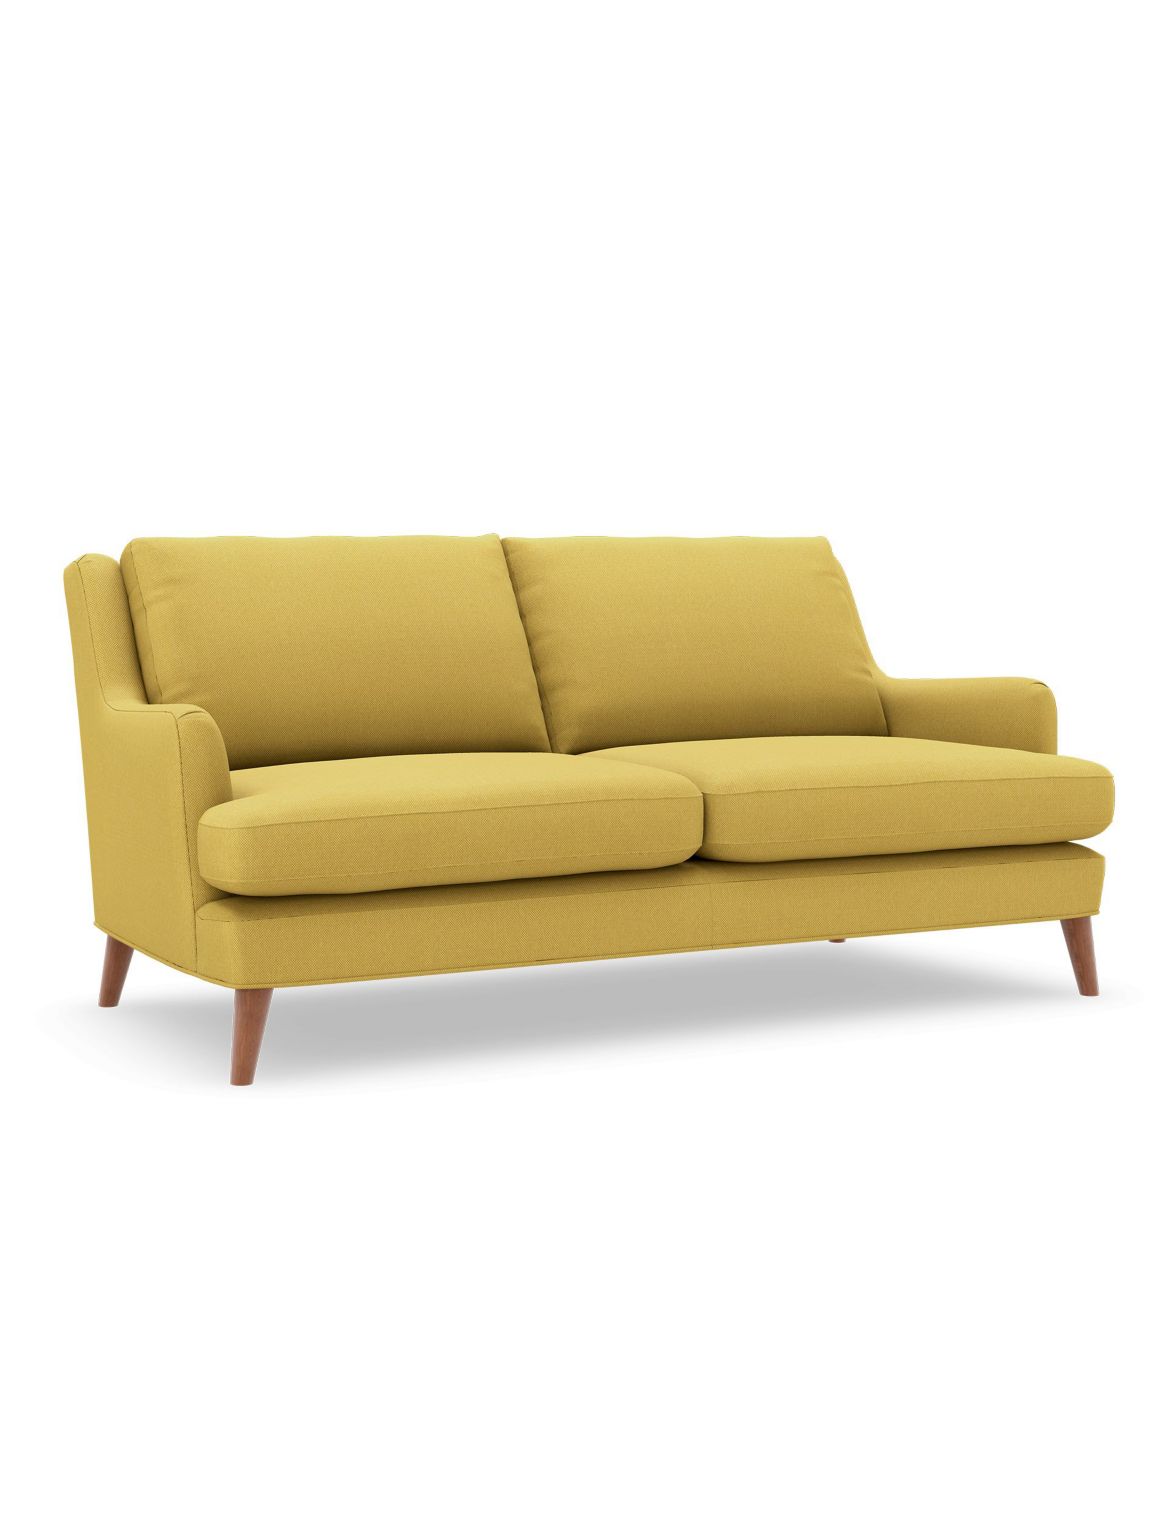 Ashton Medium Sofa yellow